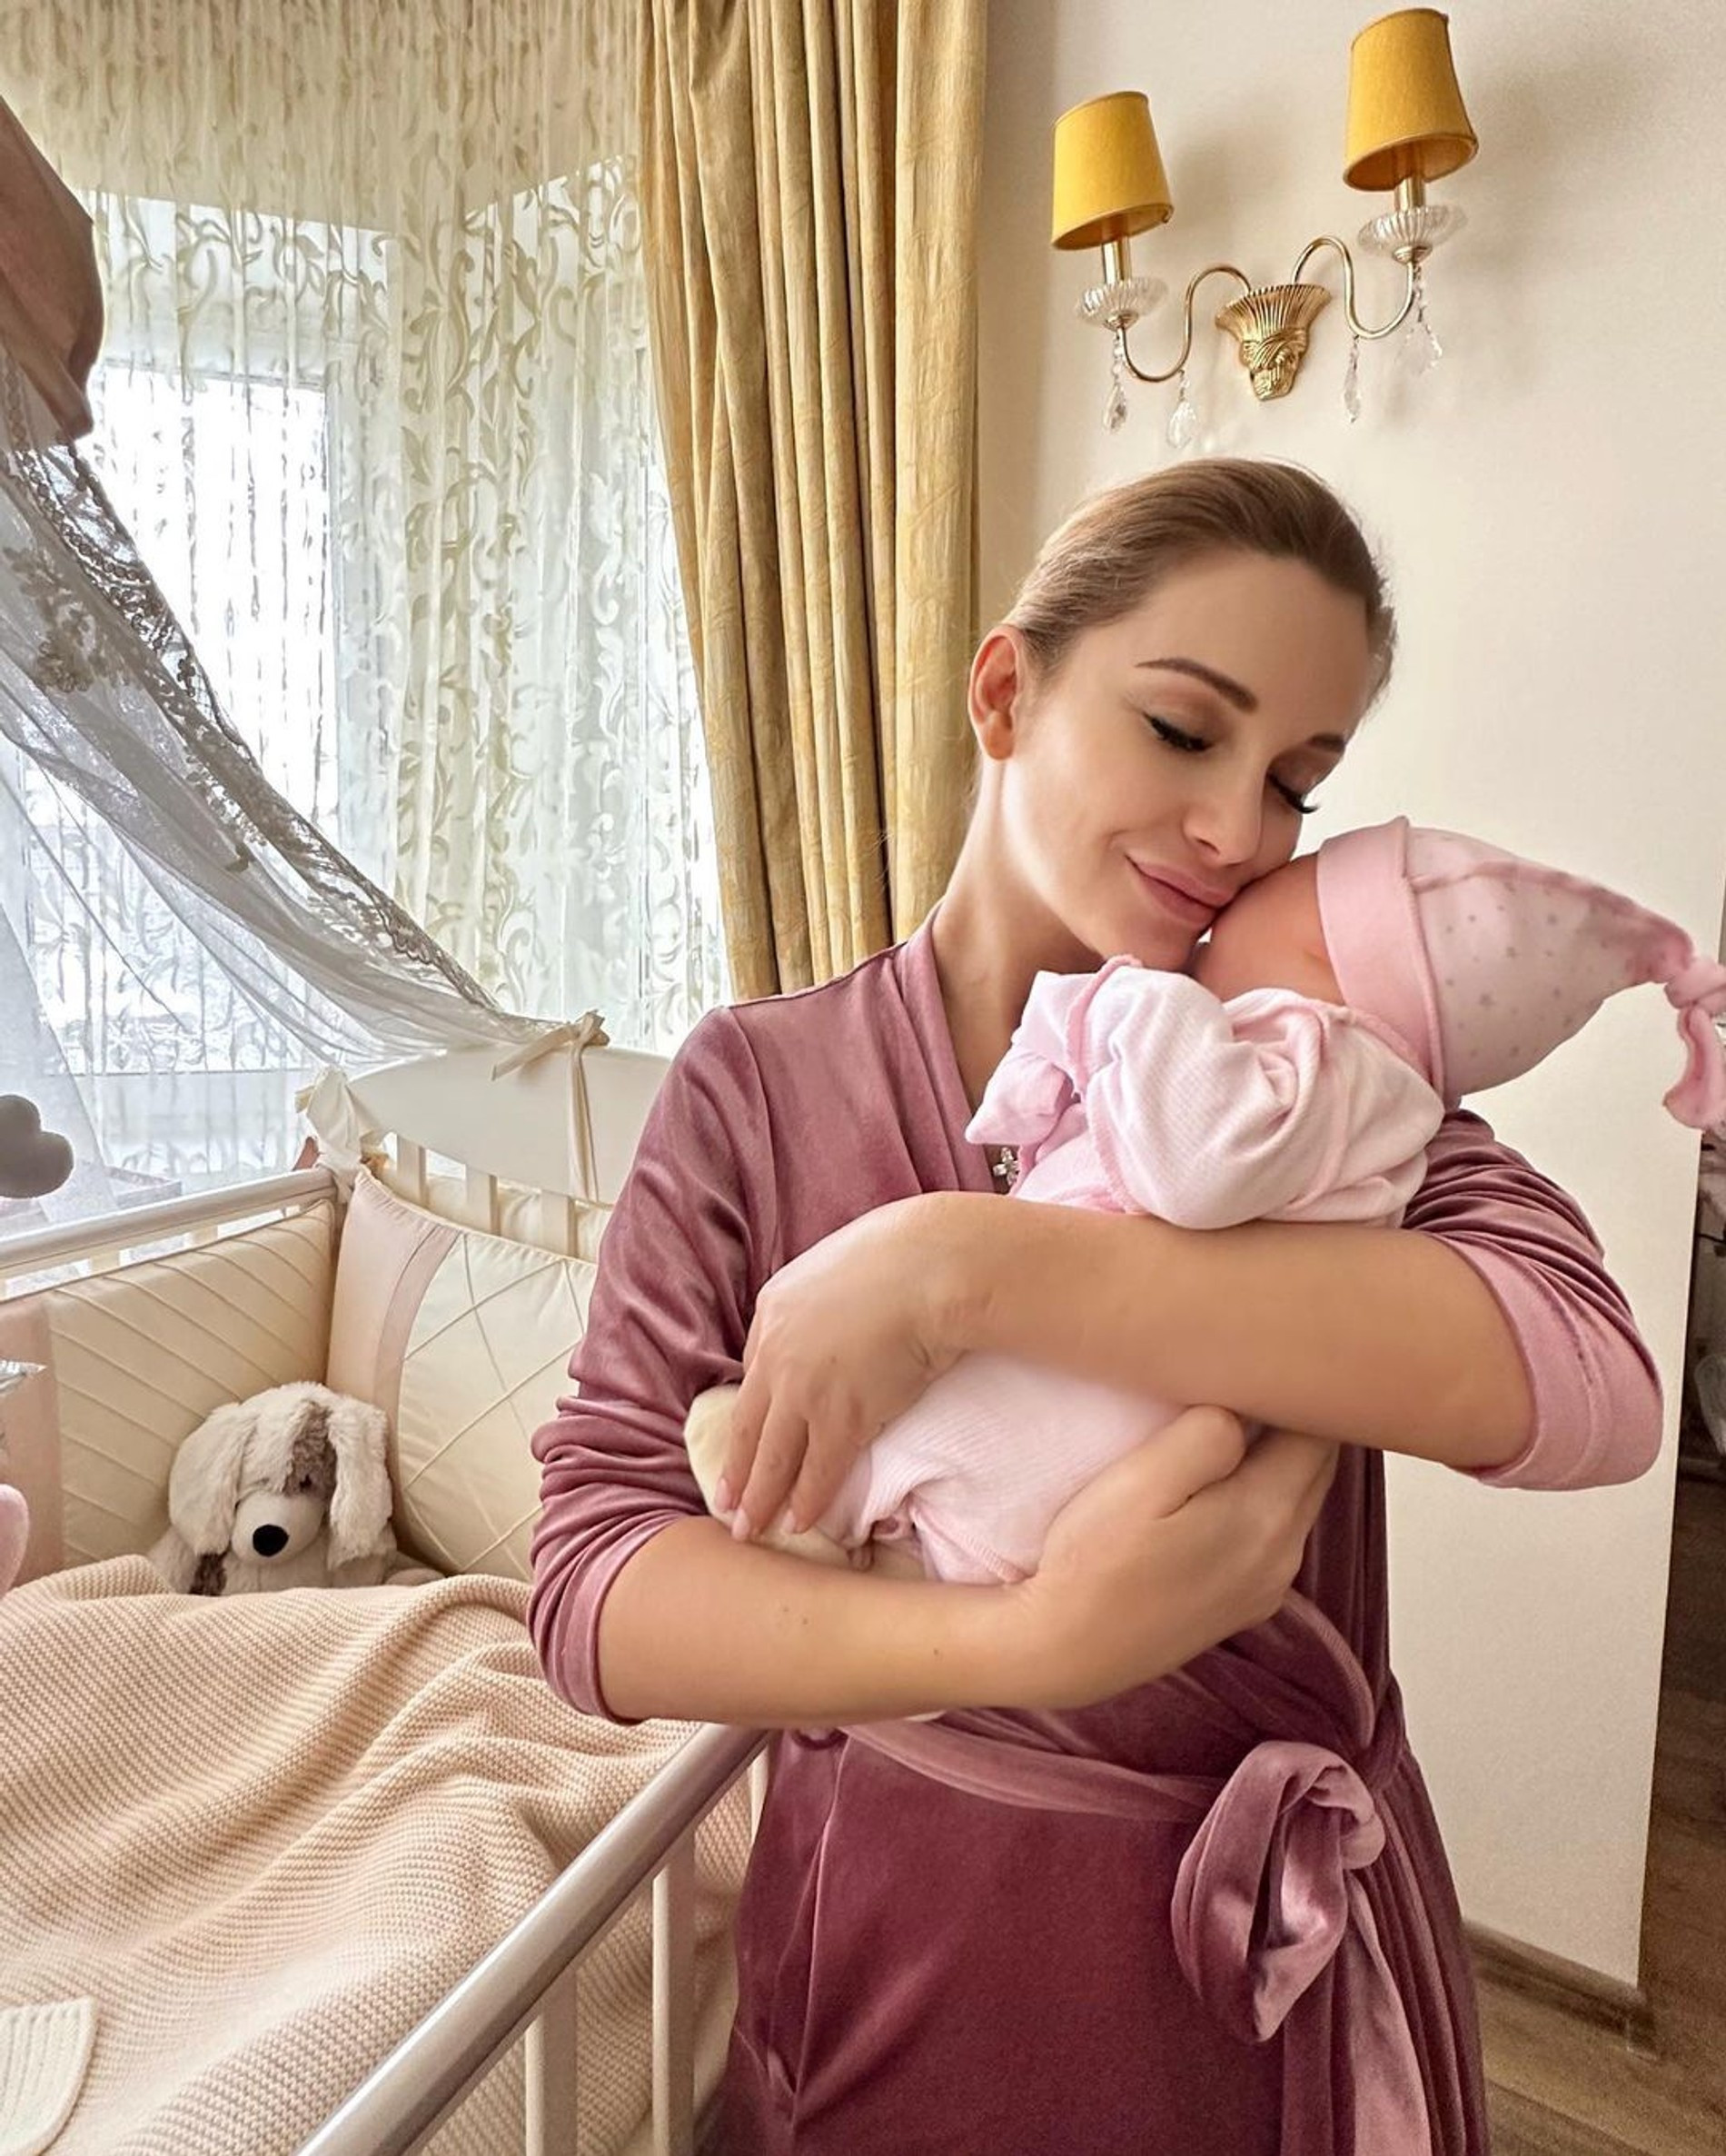 Ольга Орлова с новорожденной дочерью Аней
Фото: Инстаграм (запрещен в РФ) Ольги Орловой